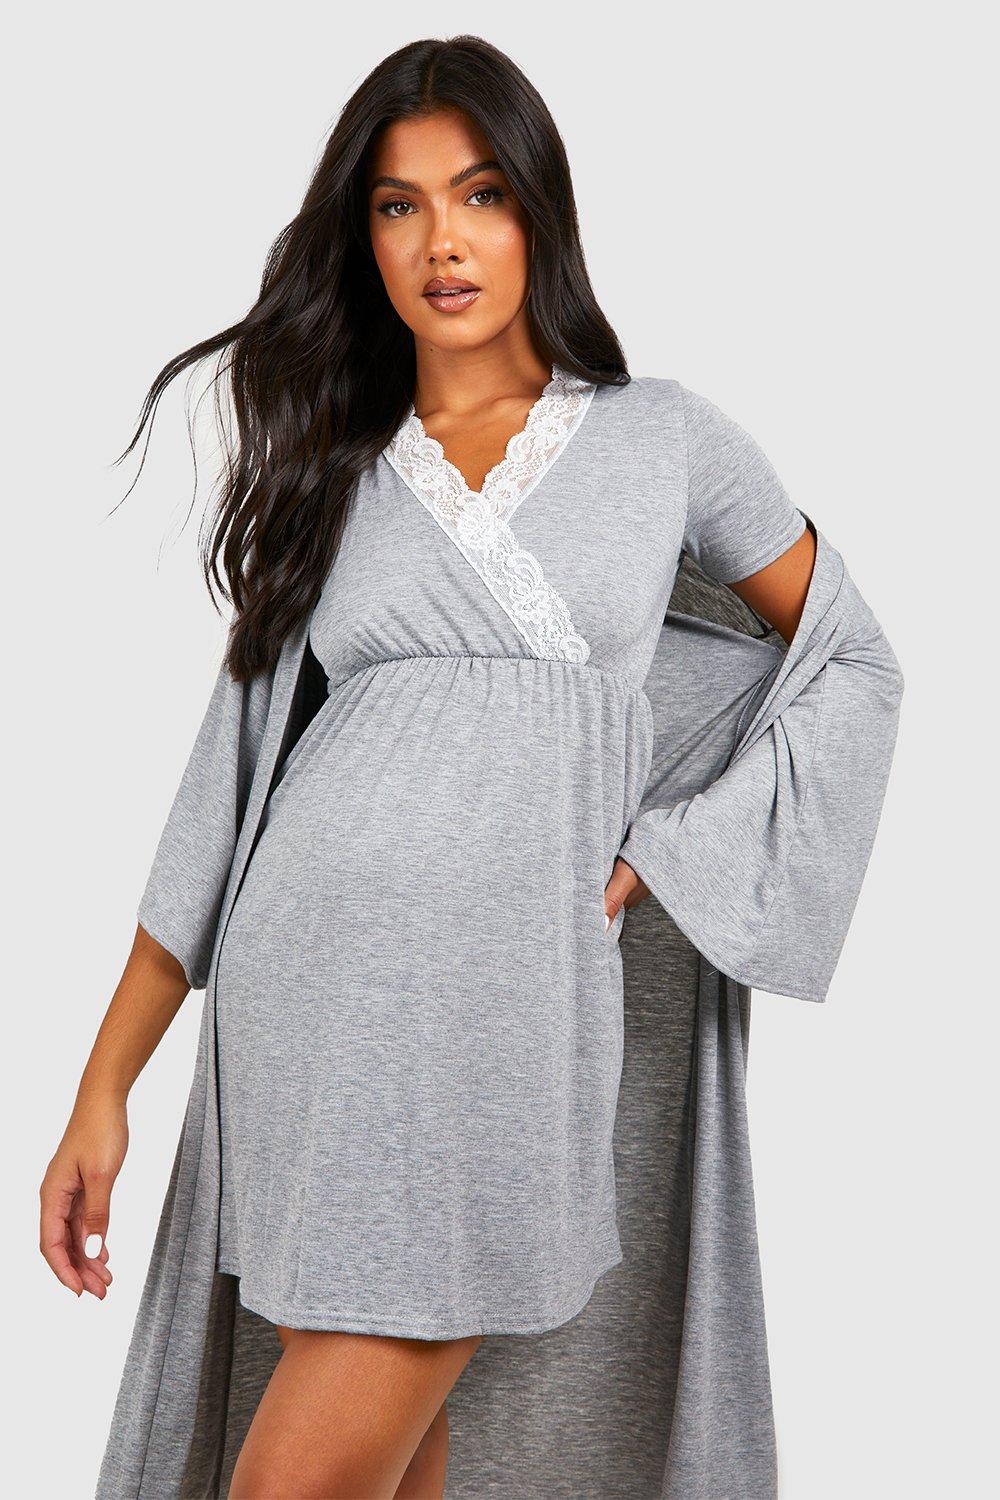 Maternity Nursing Nightgown & Kimono Robe Set